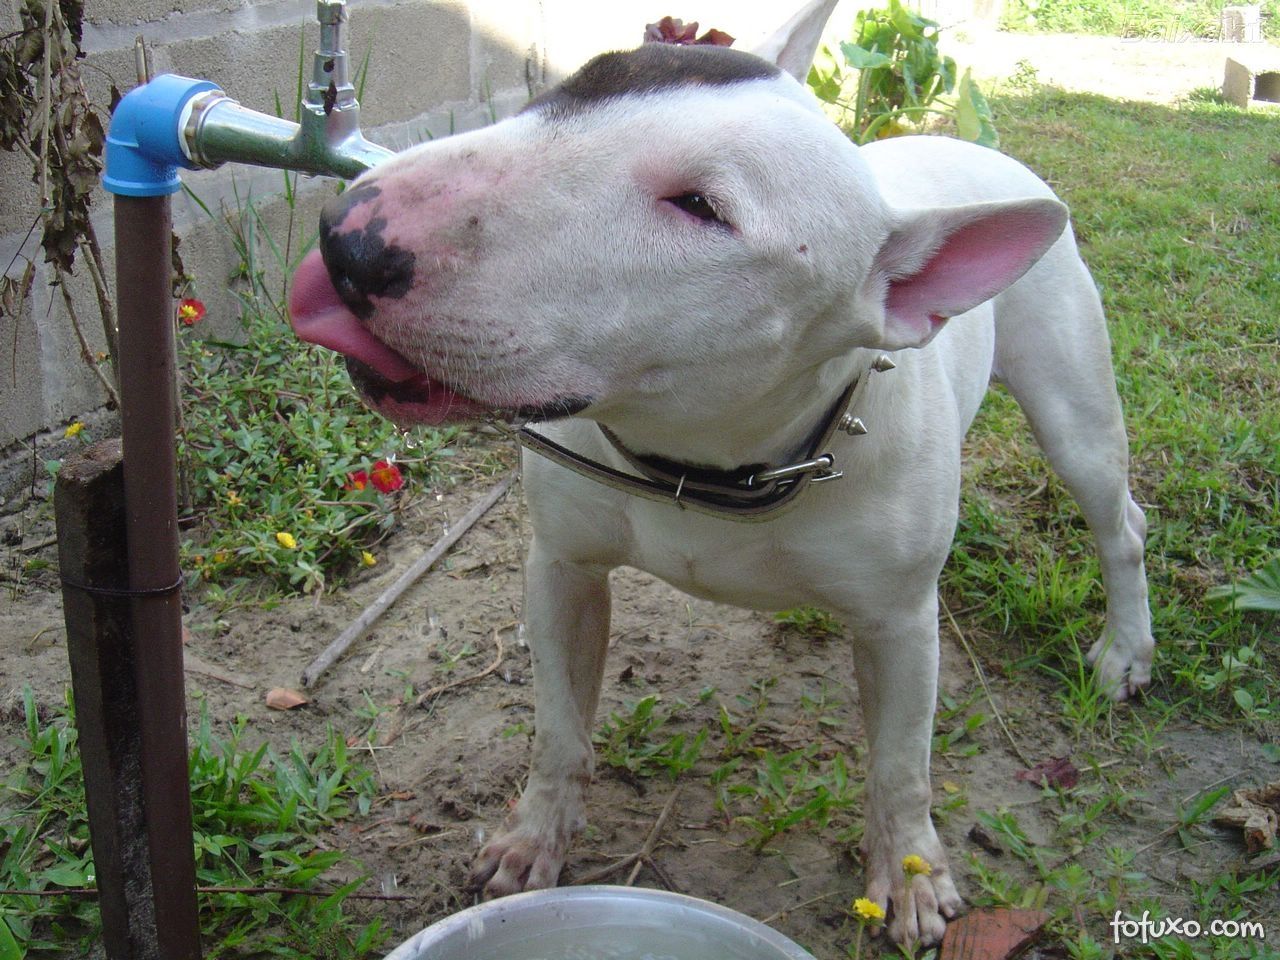 Apenas agua ja é suficiente para matar a sede do seu cão.